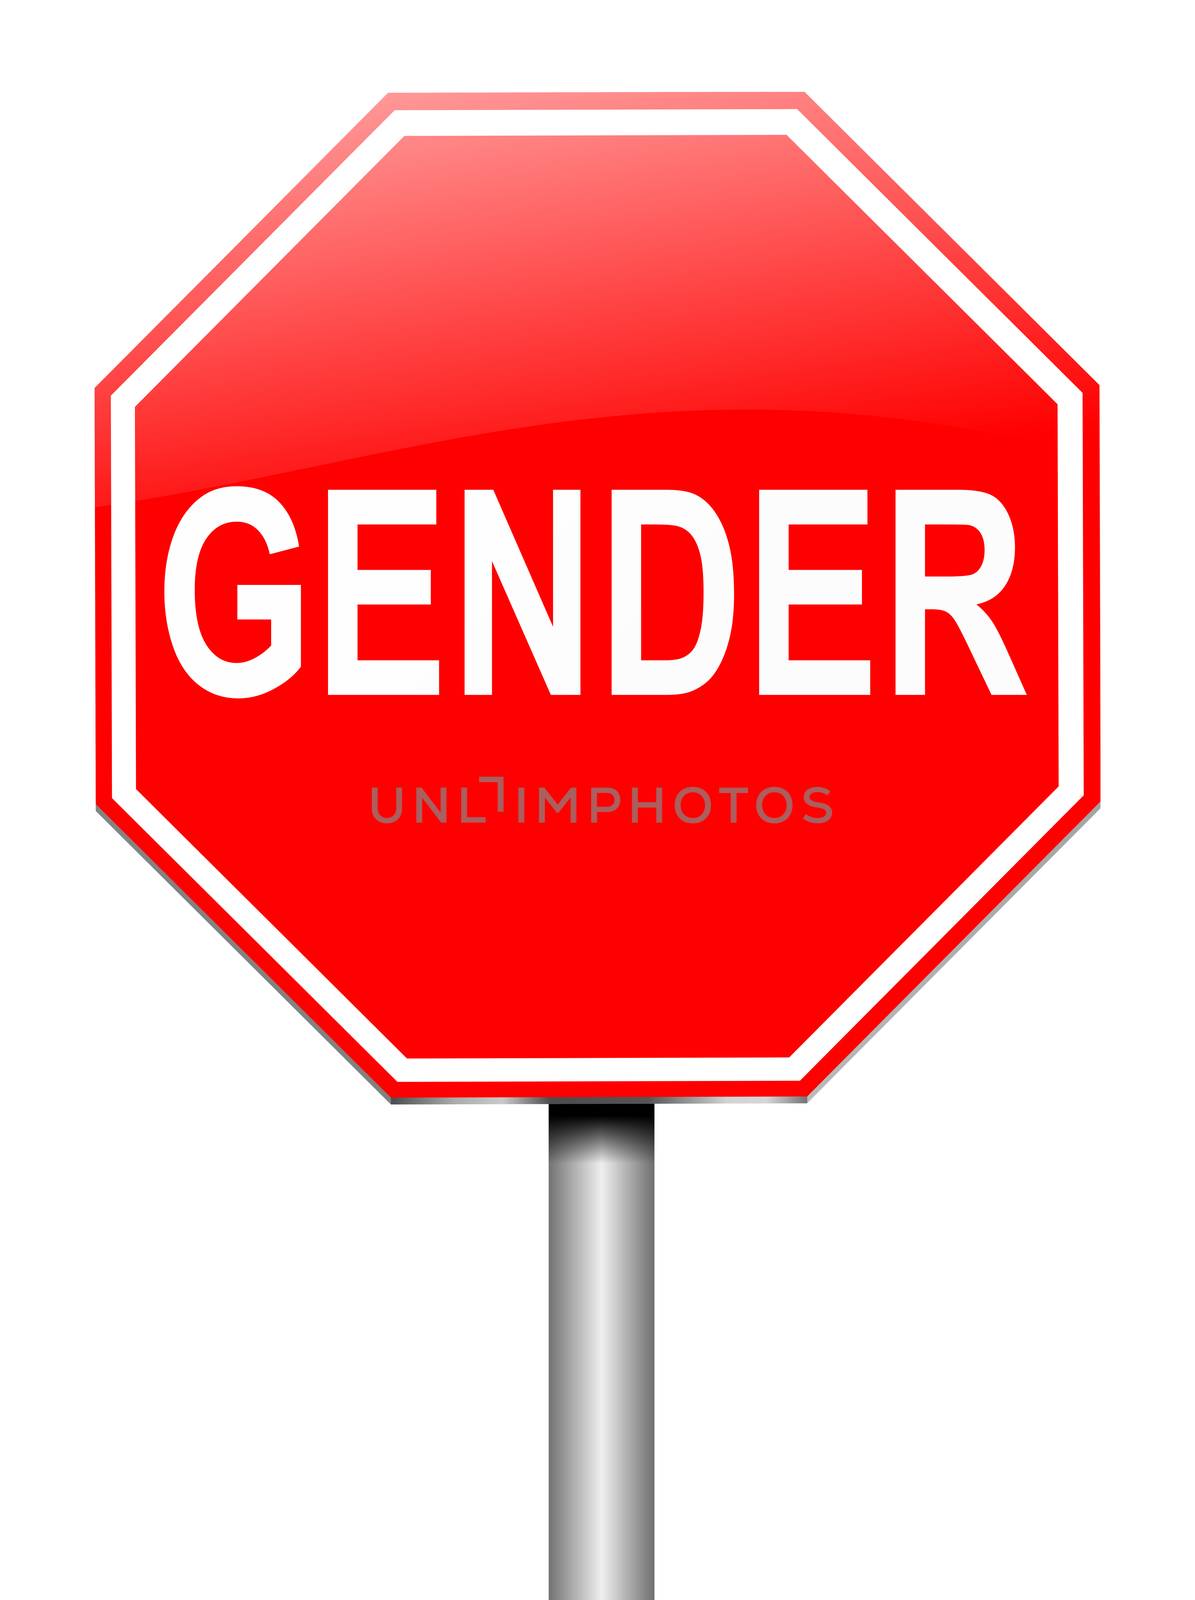 Gender sign concept. by 72soul